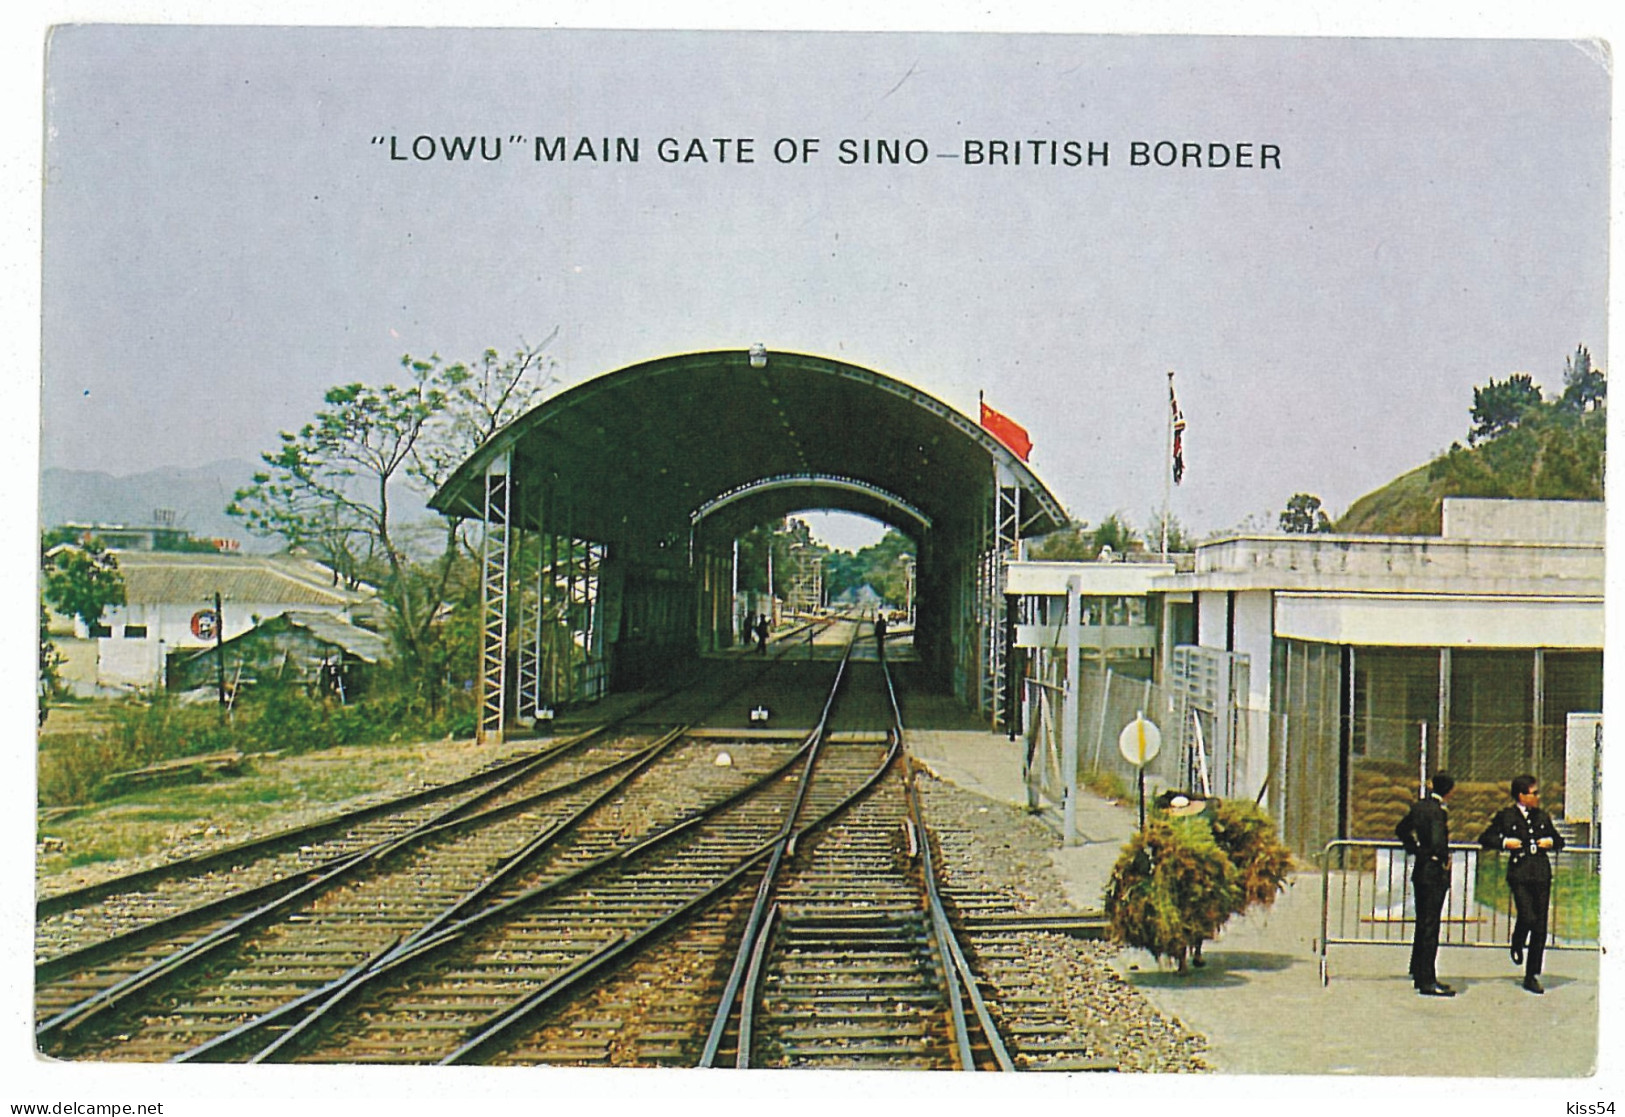 CH 51 - 4234 HONG KONG, Lowu Main, British Border, China - Old Postcard - Unused - Chine (Hong Kong)